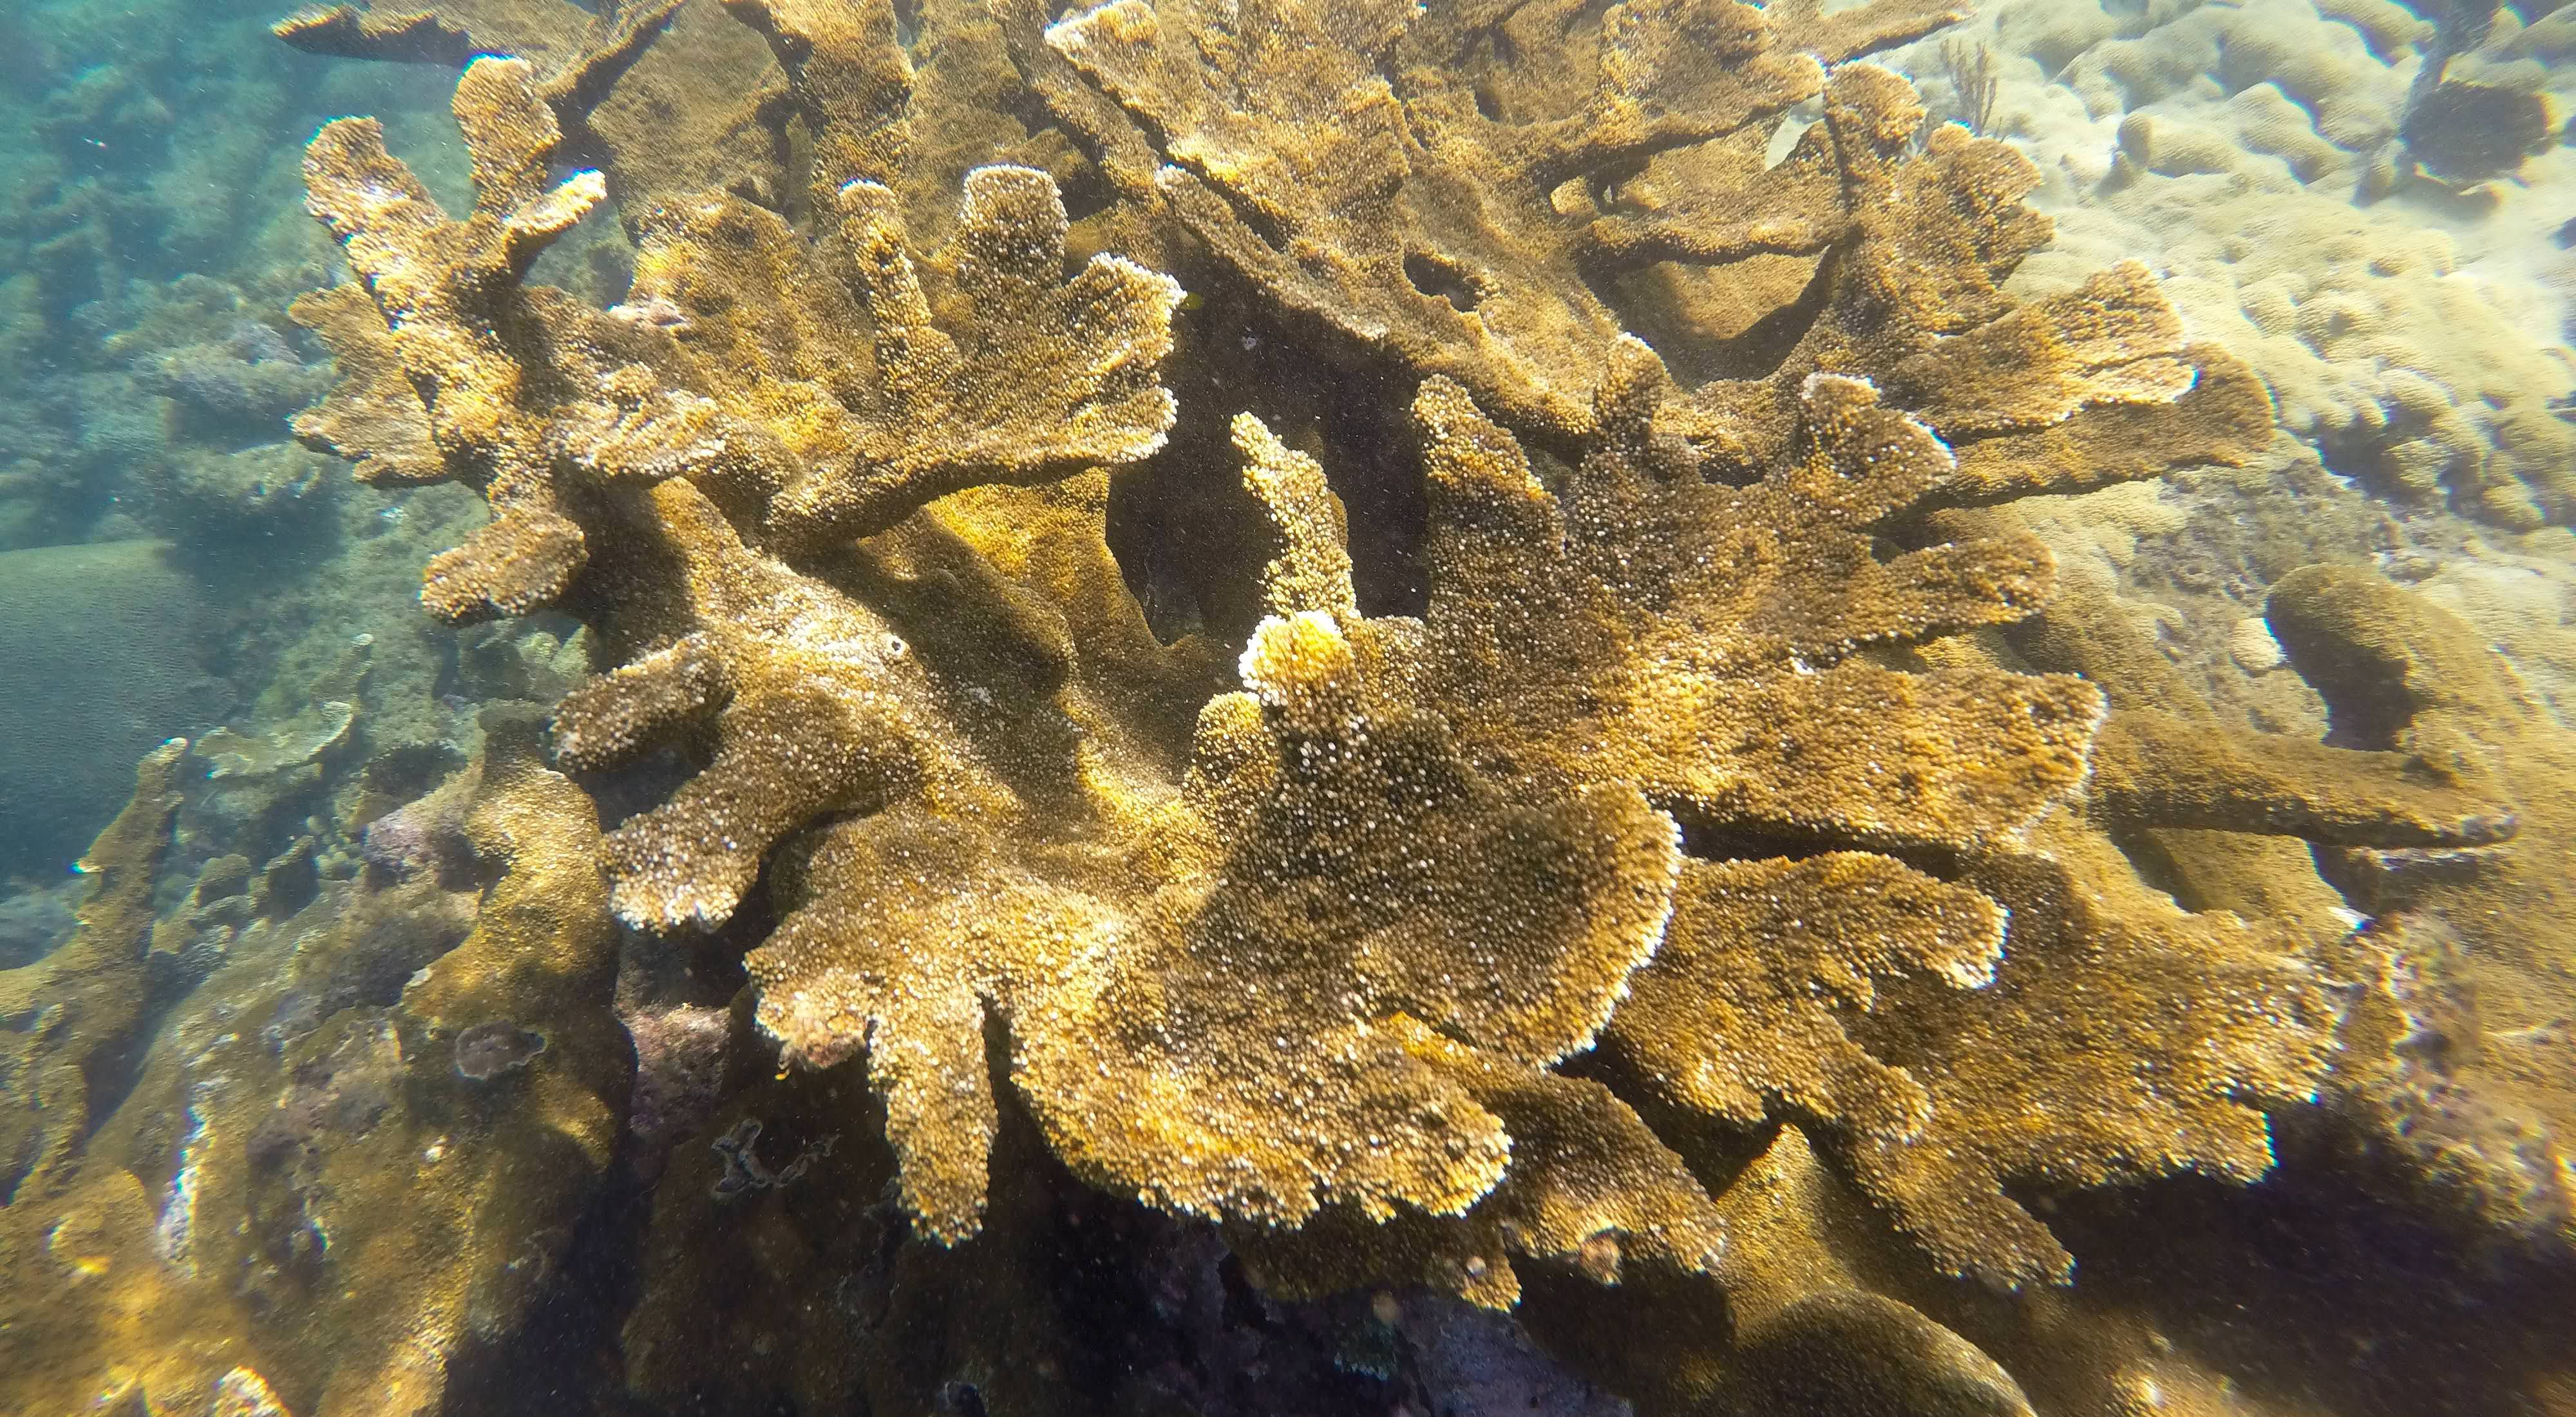 elkhorn corals in Puerto Rico